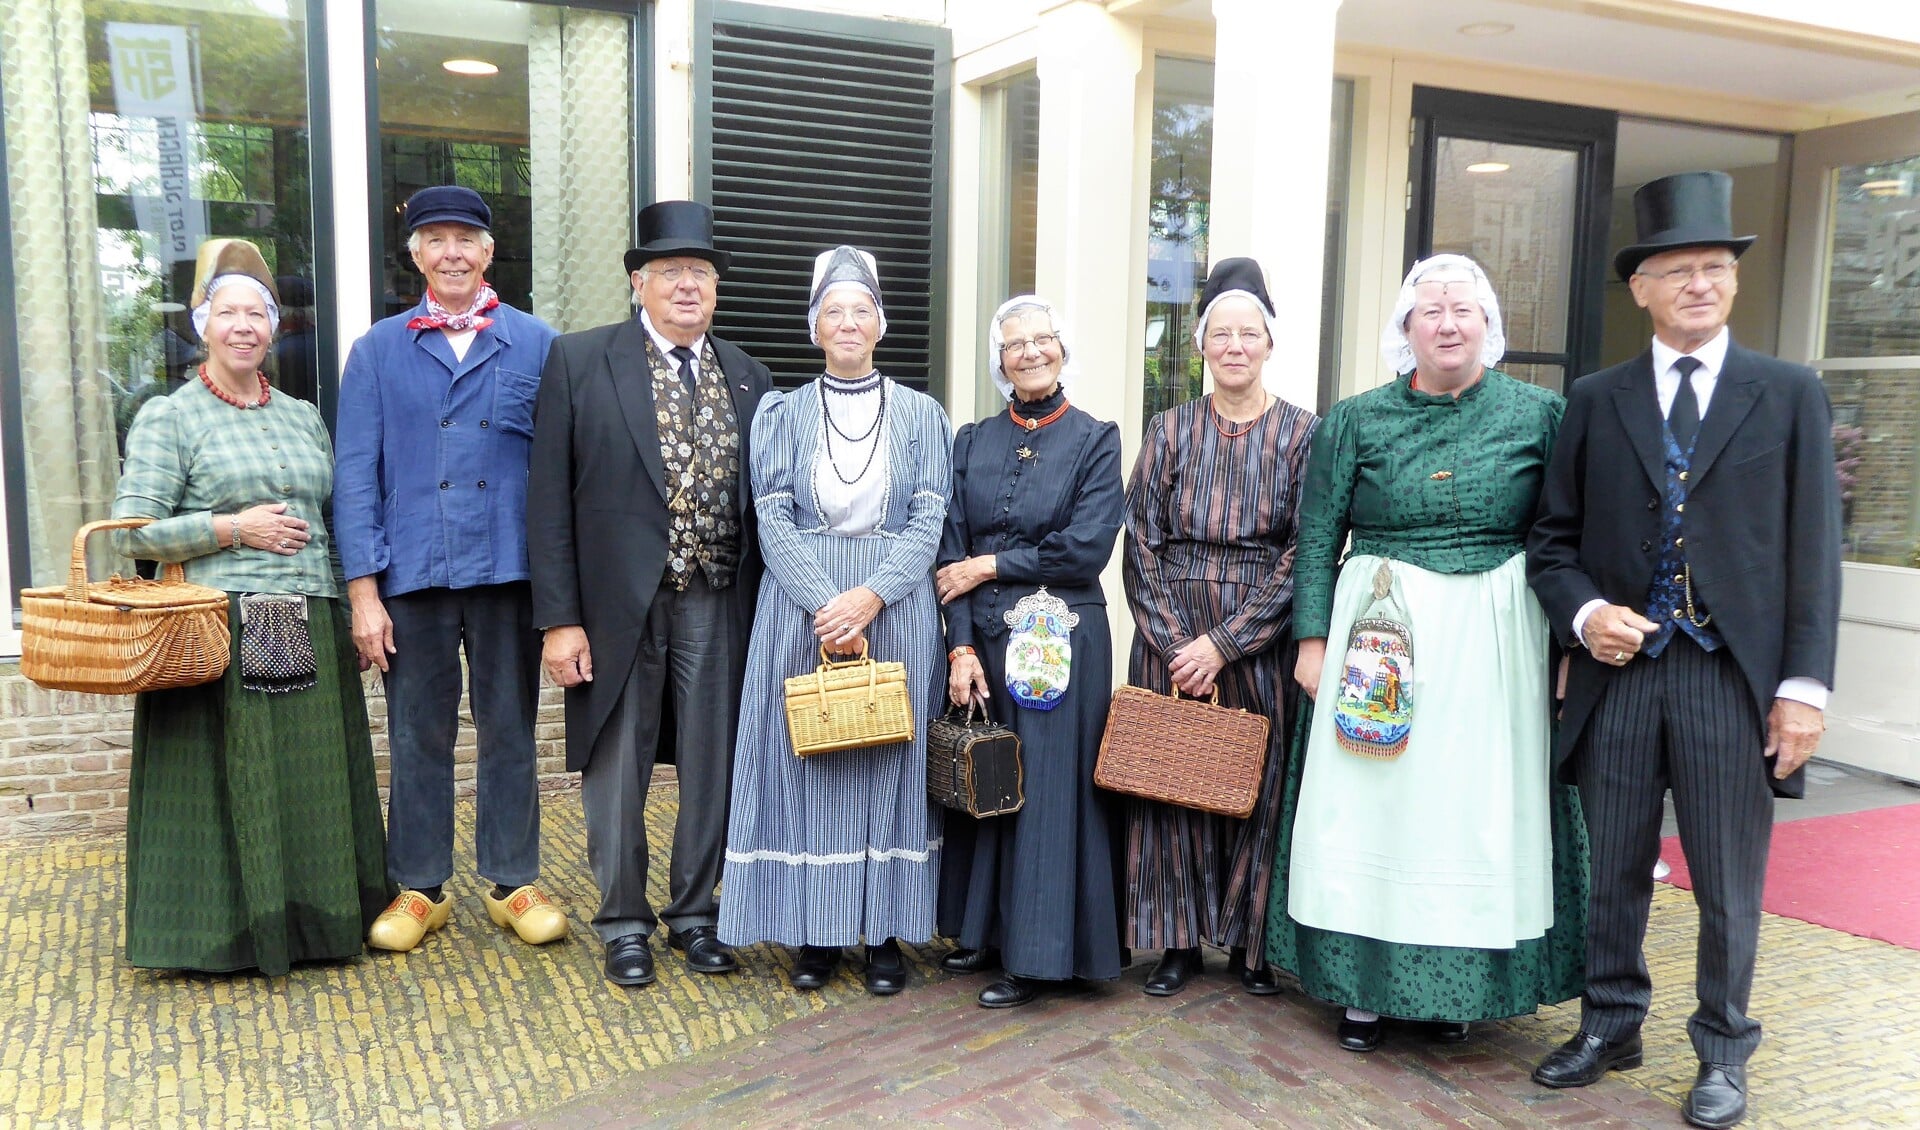 Skroiversgroep Veenhuizen verzorgt in het Westfries dialect een optreden in dorpshuis 't Zwaantje.